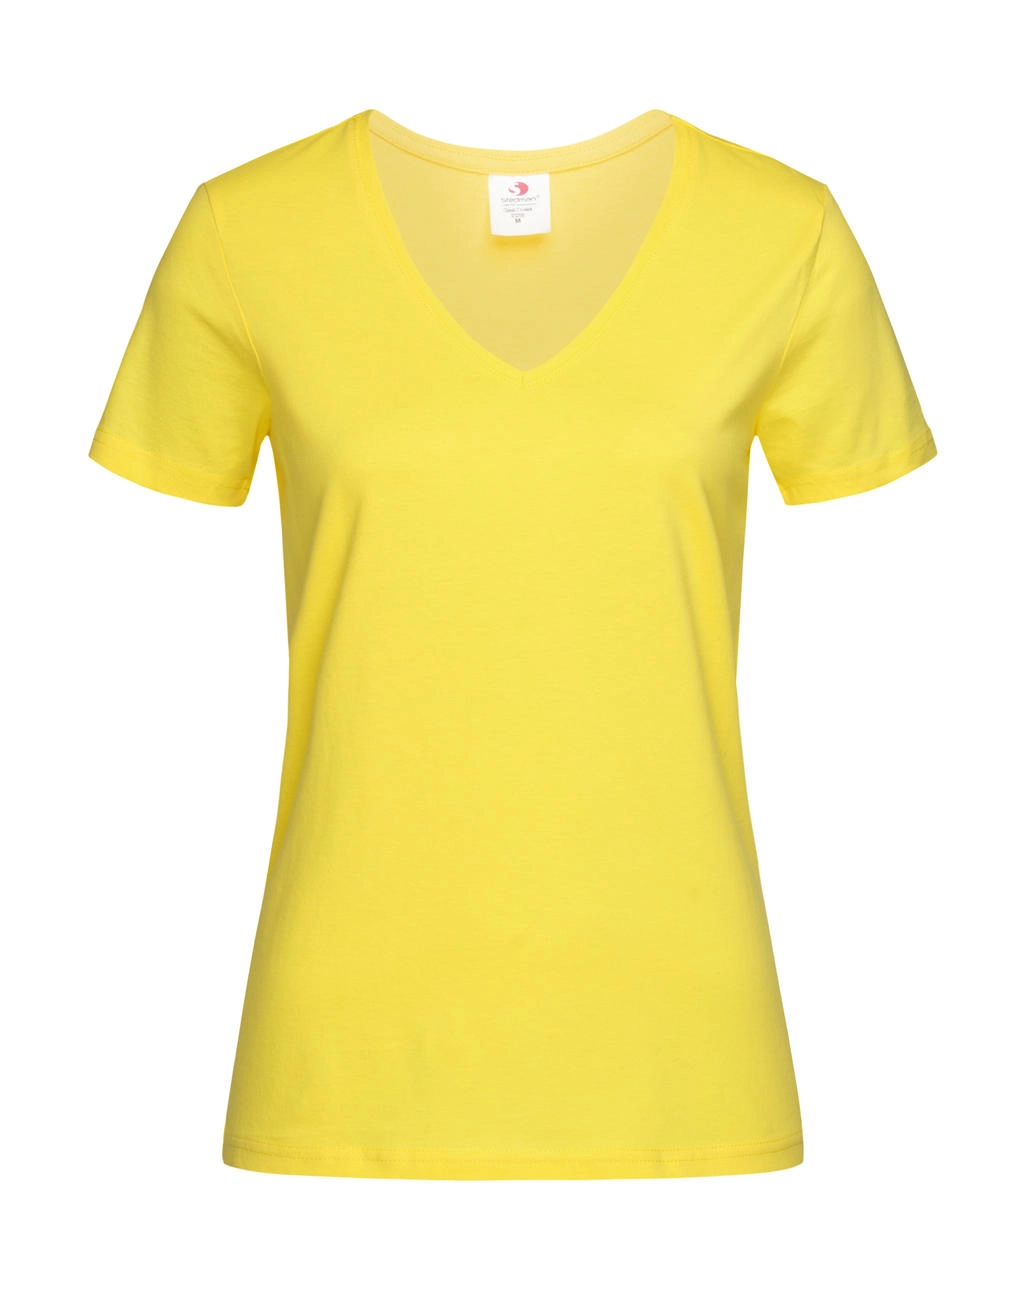 Classic-T V-Neck Women zum Besticken und Bedrucken in der Farbe Yellow mit Ihren Logo, Schriftzug oder Motiv.